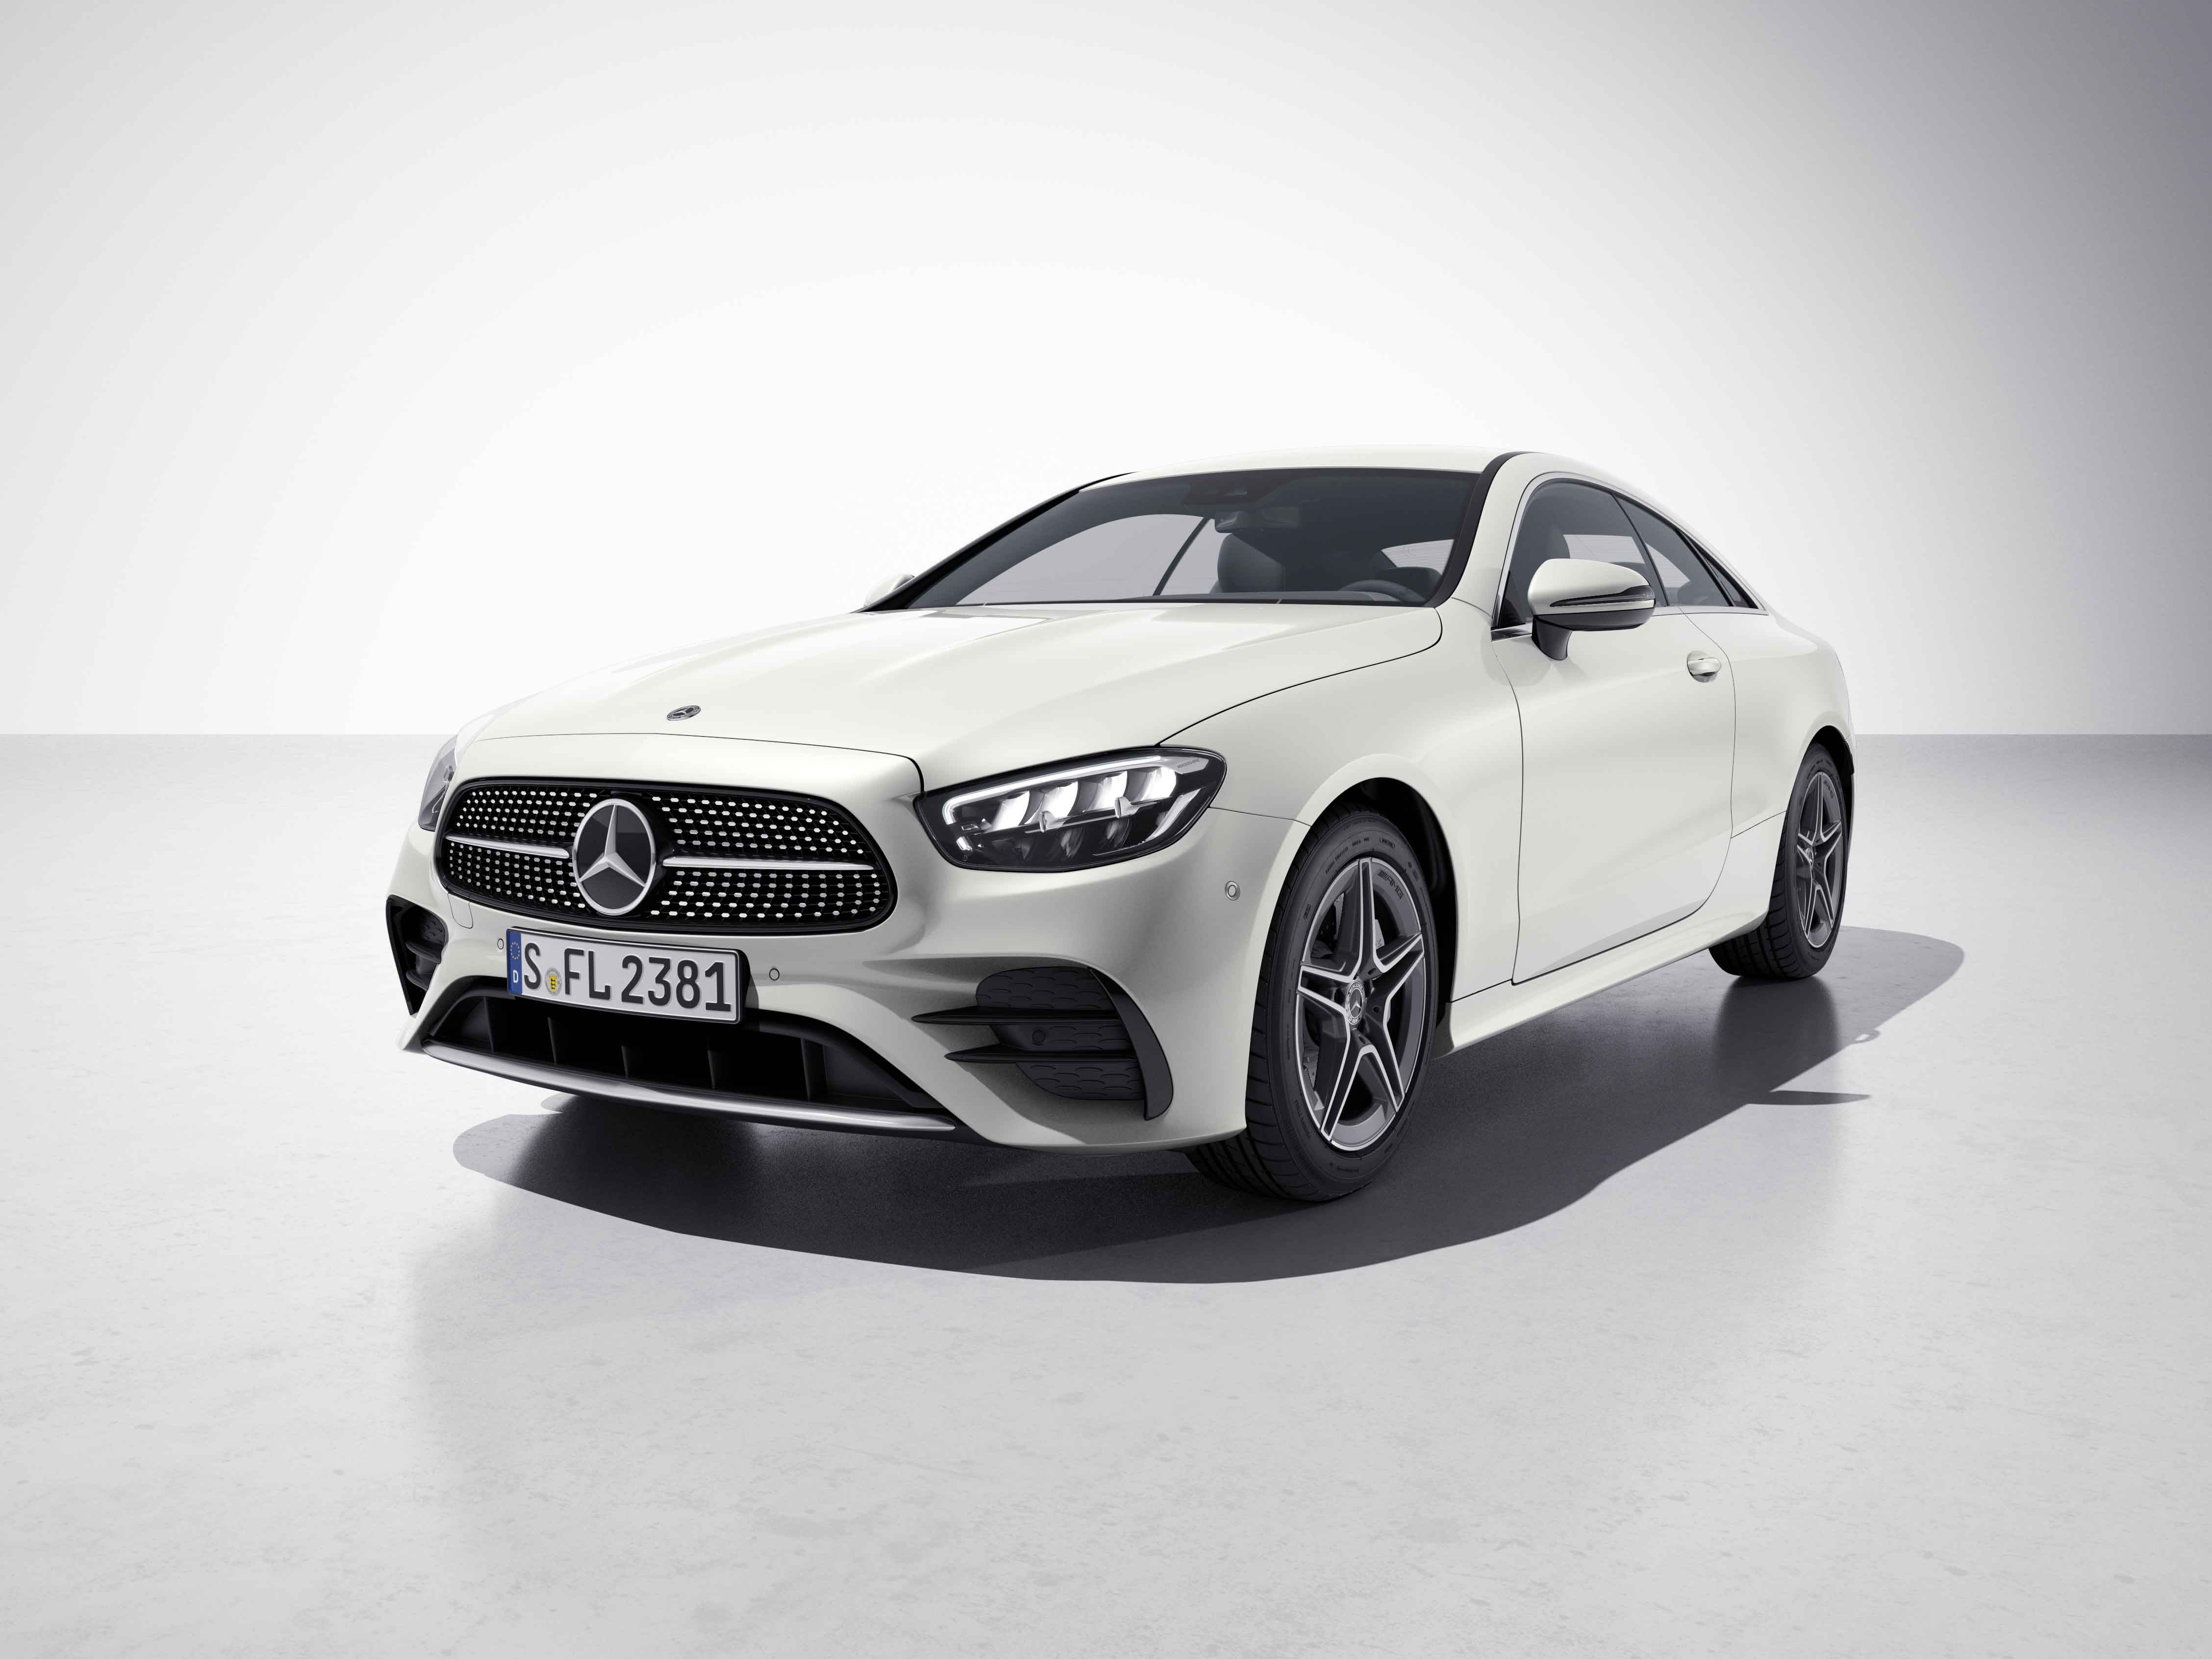 Vue de trois quarts de profil de la Mercedes Classe E Coupé avec la peinture designo - blanc diamant bright designo